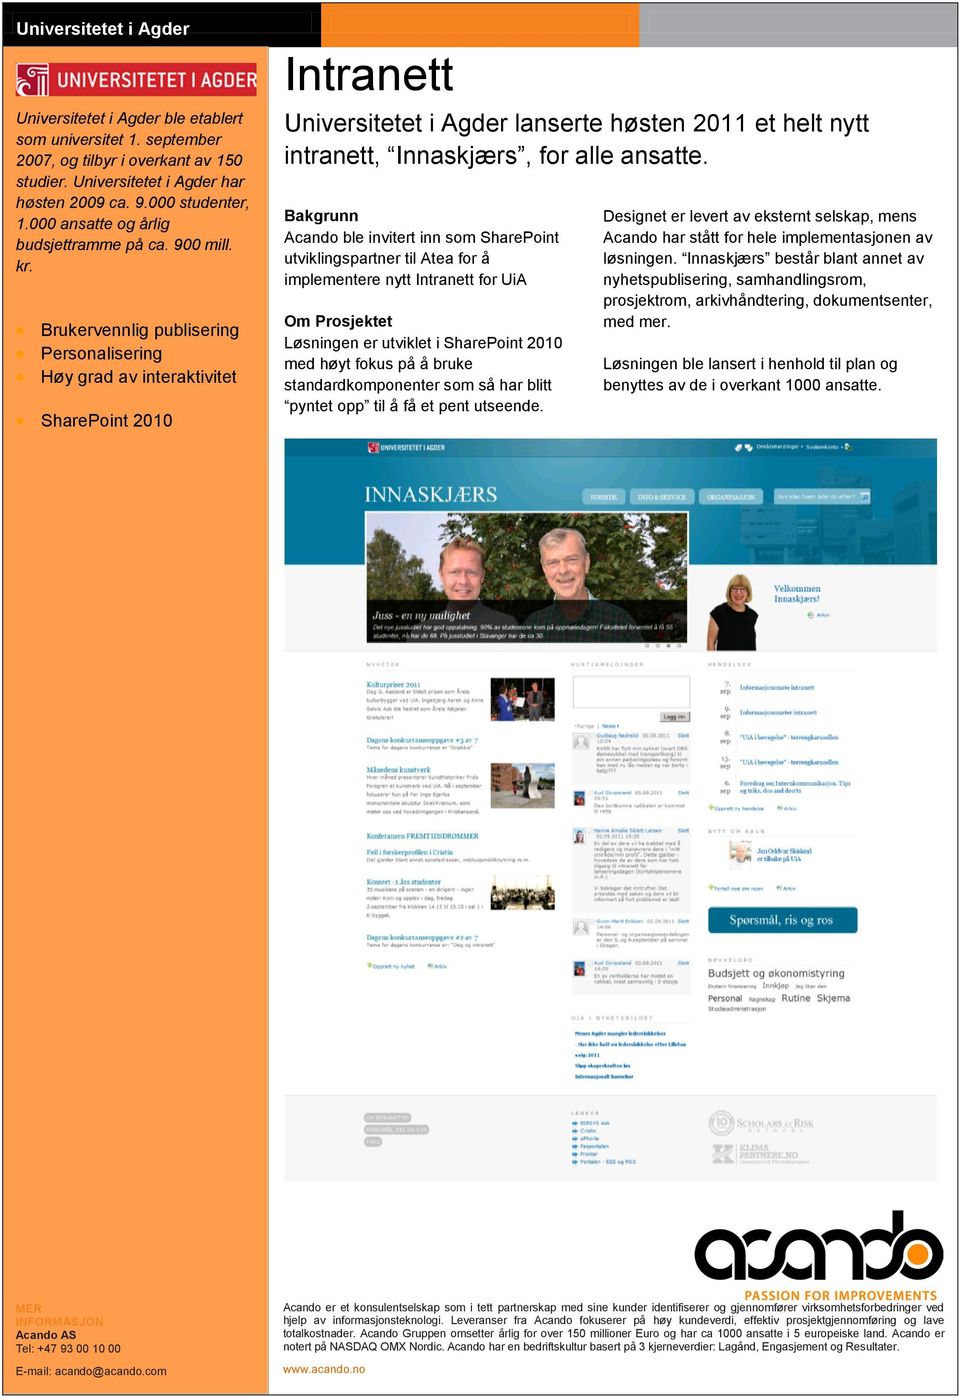 Brukervennlig publisering Personalisering Høy grad av interaktivitet SharePoint 2010 Intranett Universitetet i Agder lanserte høsten 2011 et helt nytt intranett, Innaskjærs, for alle ansatte.